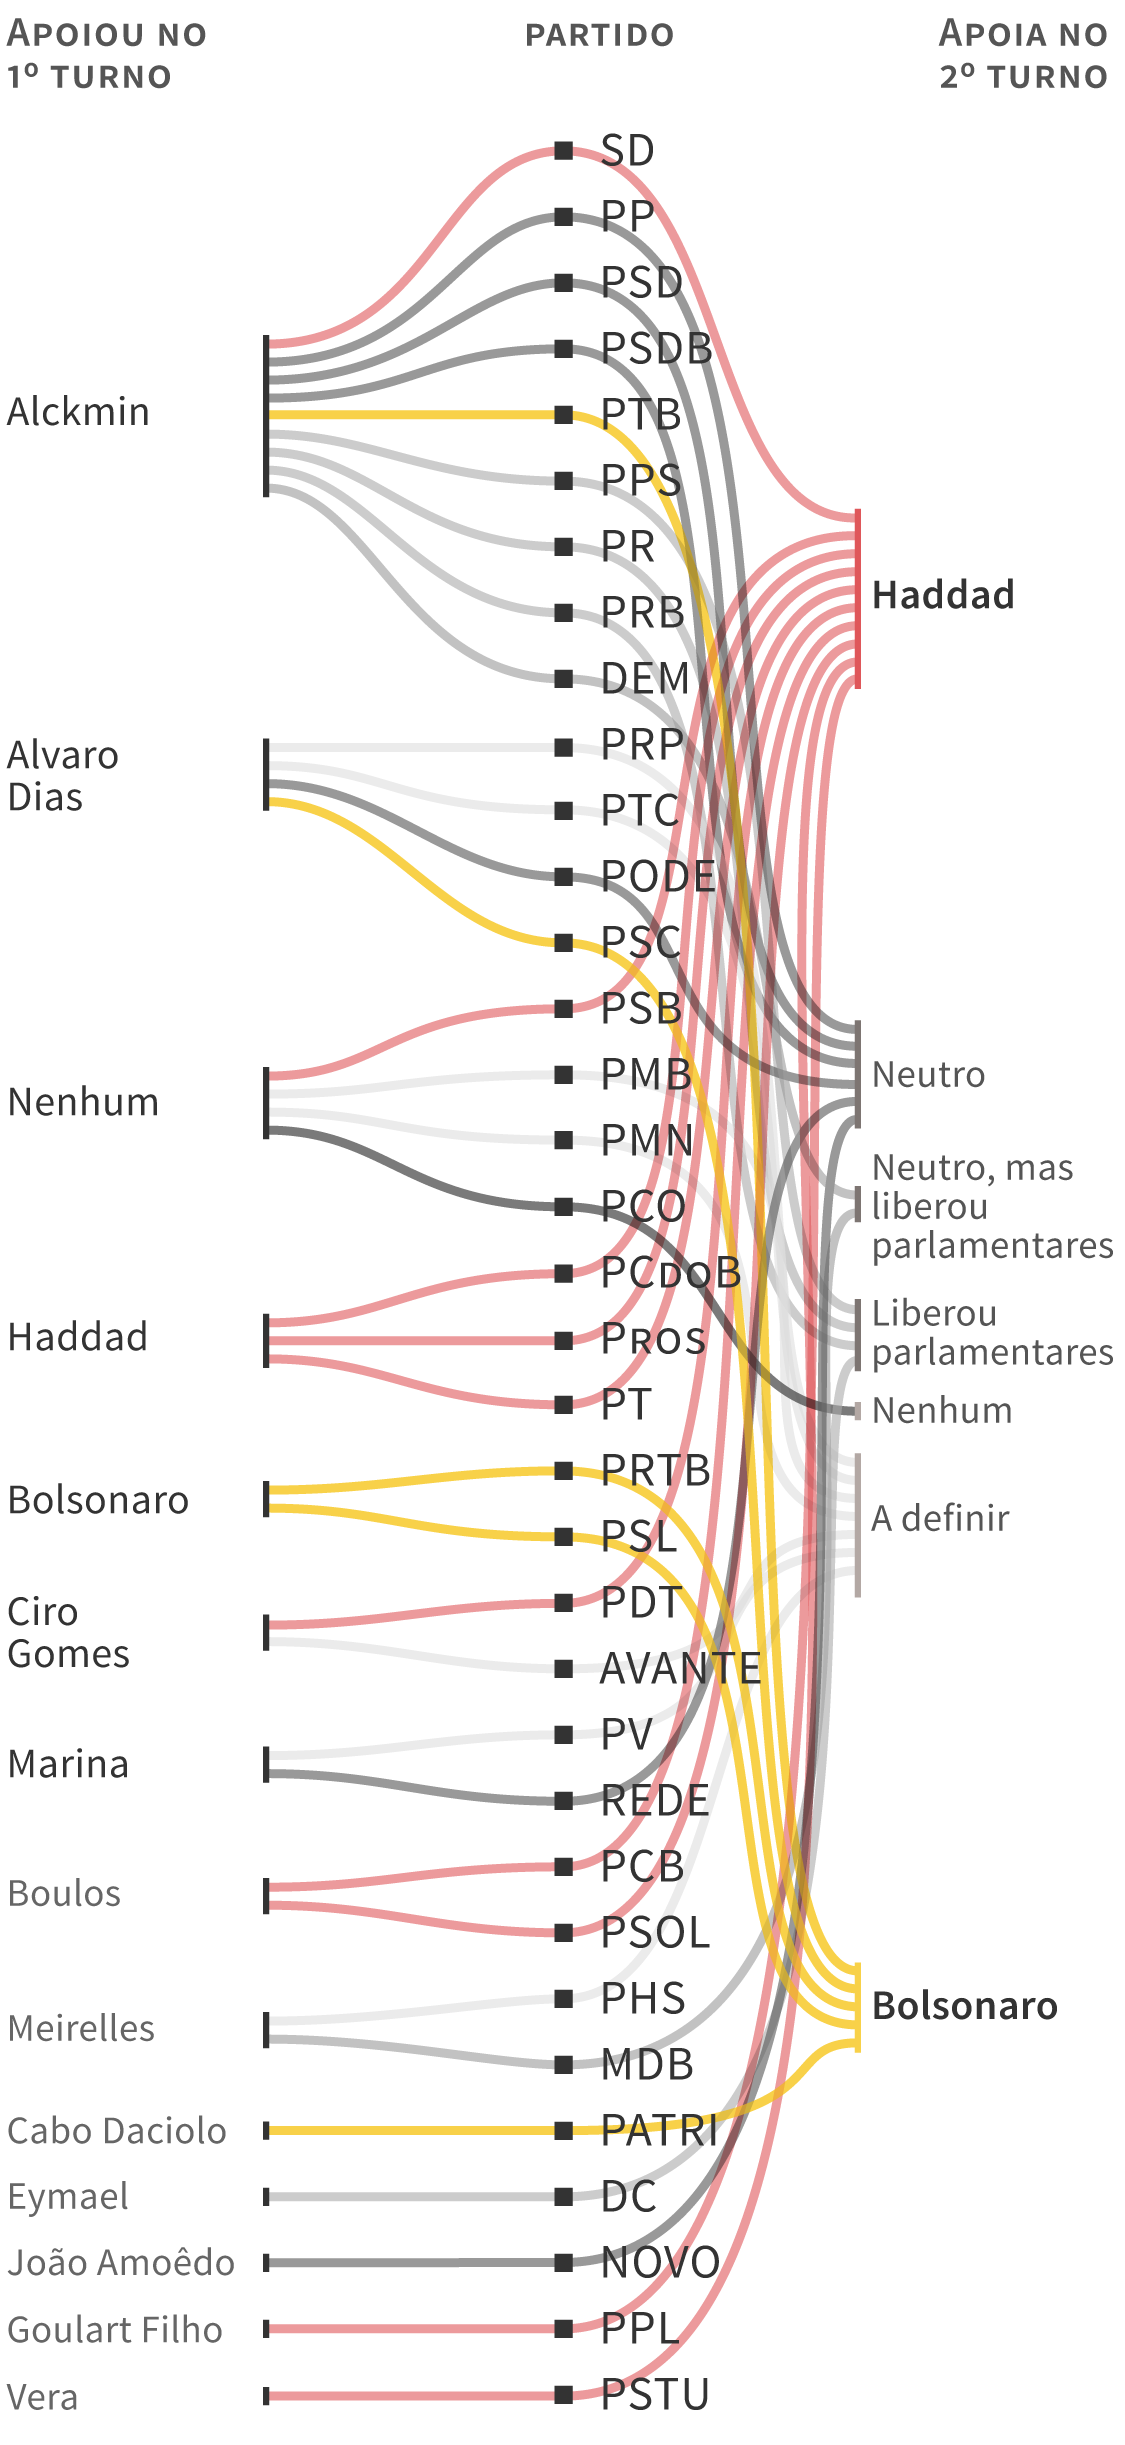 Infográfico: Veja quem apoia quem no segundo turno, com a relação dos partidos que definiram apoio ao candidato Fernando Haddad (PT) ou a Jair Bolsonaro (PSL) e a comparação com a coligação no 1º turno.